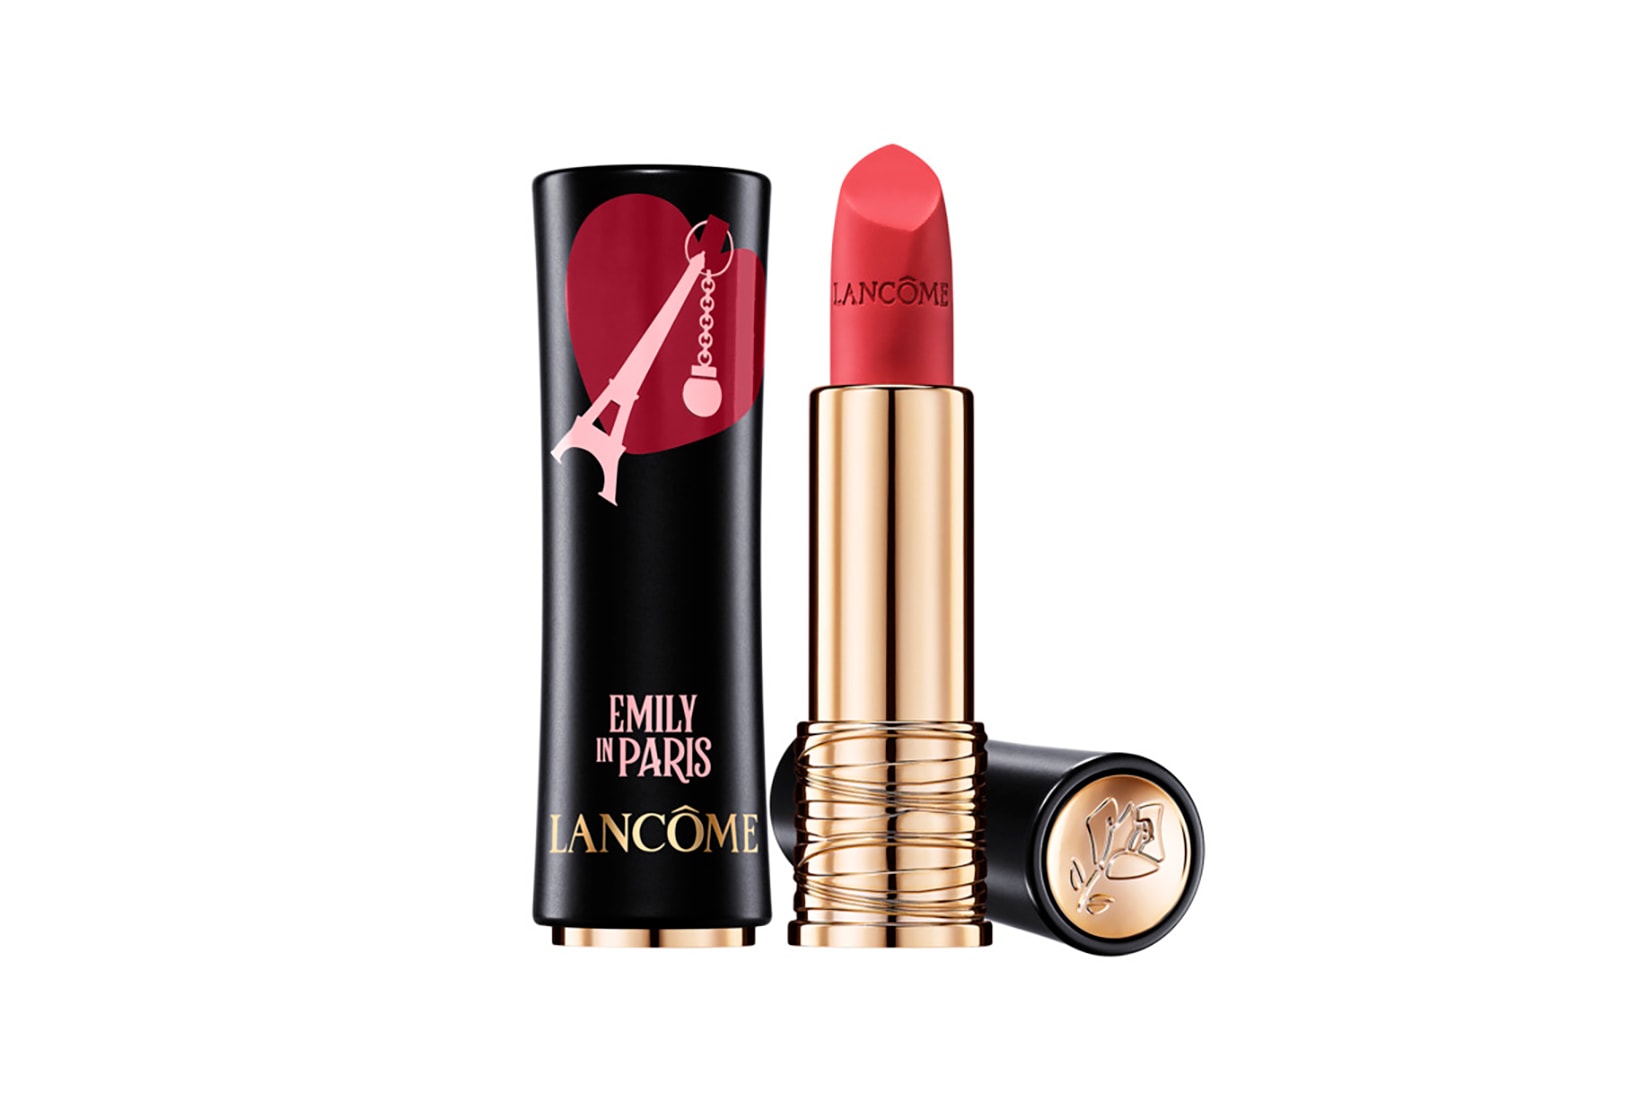 Emily in Paris Lancôme Lily Collins Netflix TV Show Makeup Lipstick